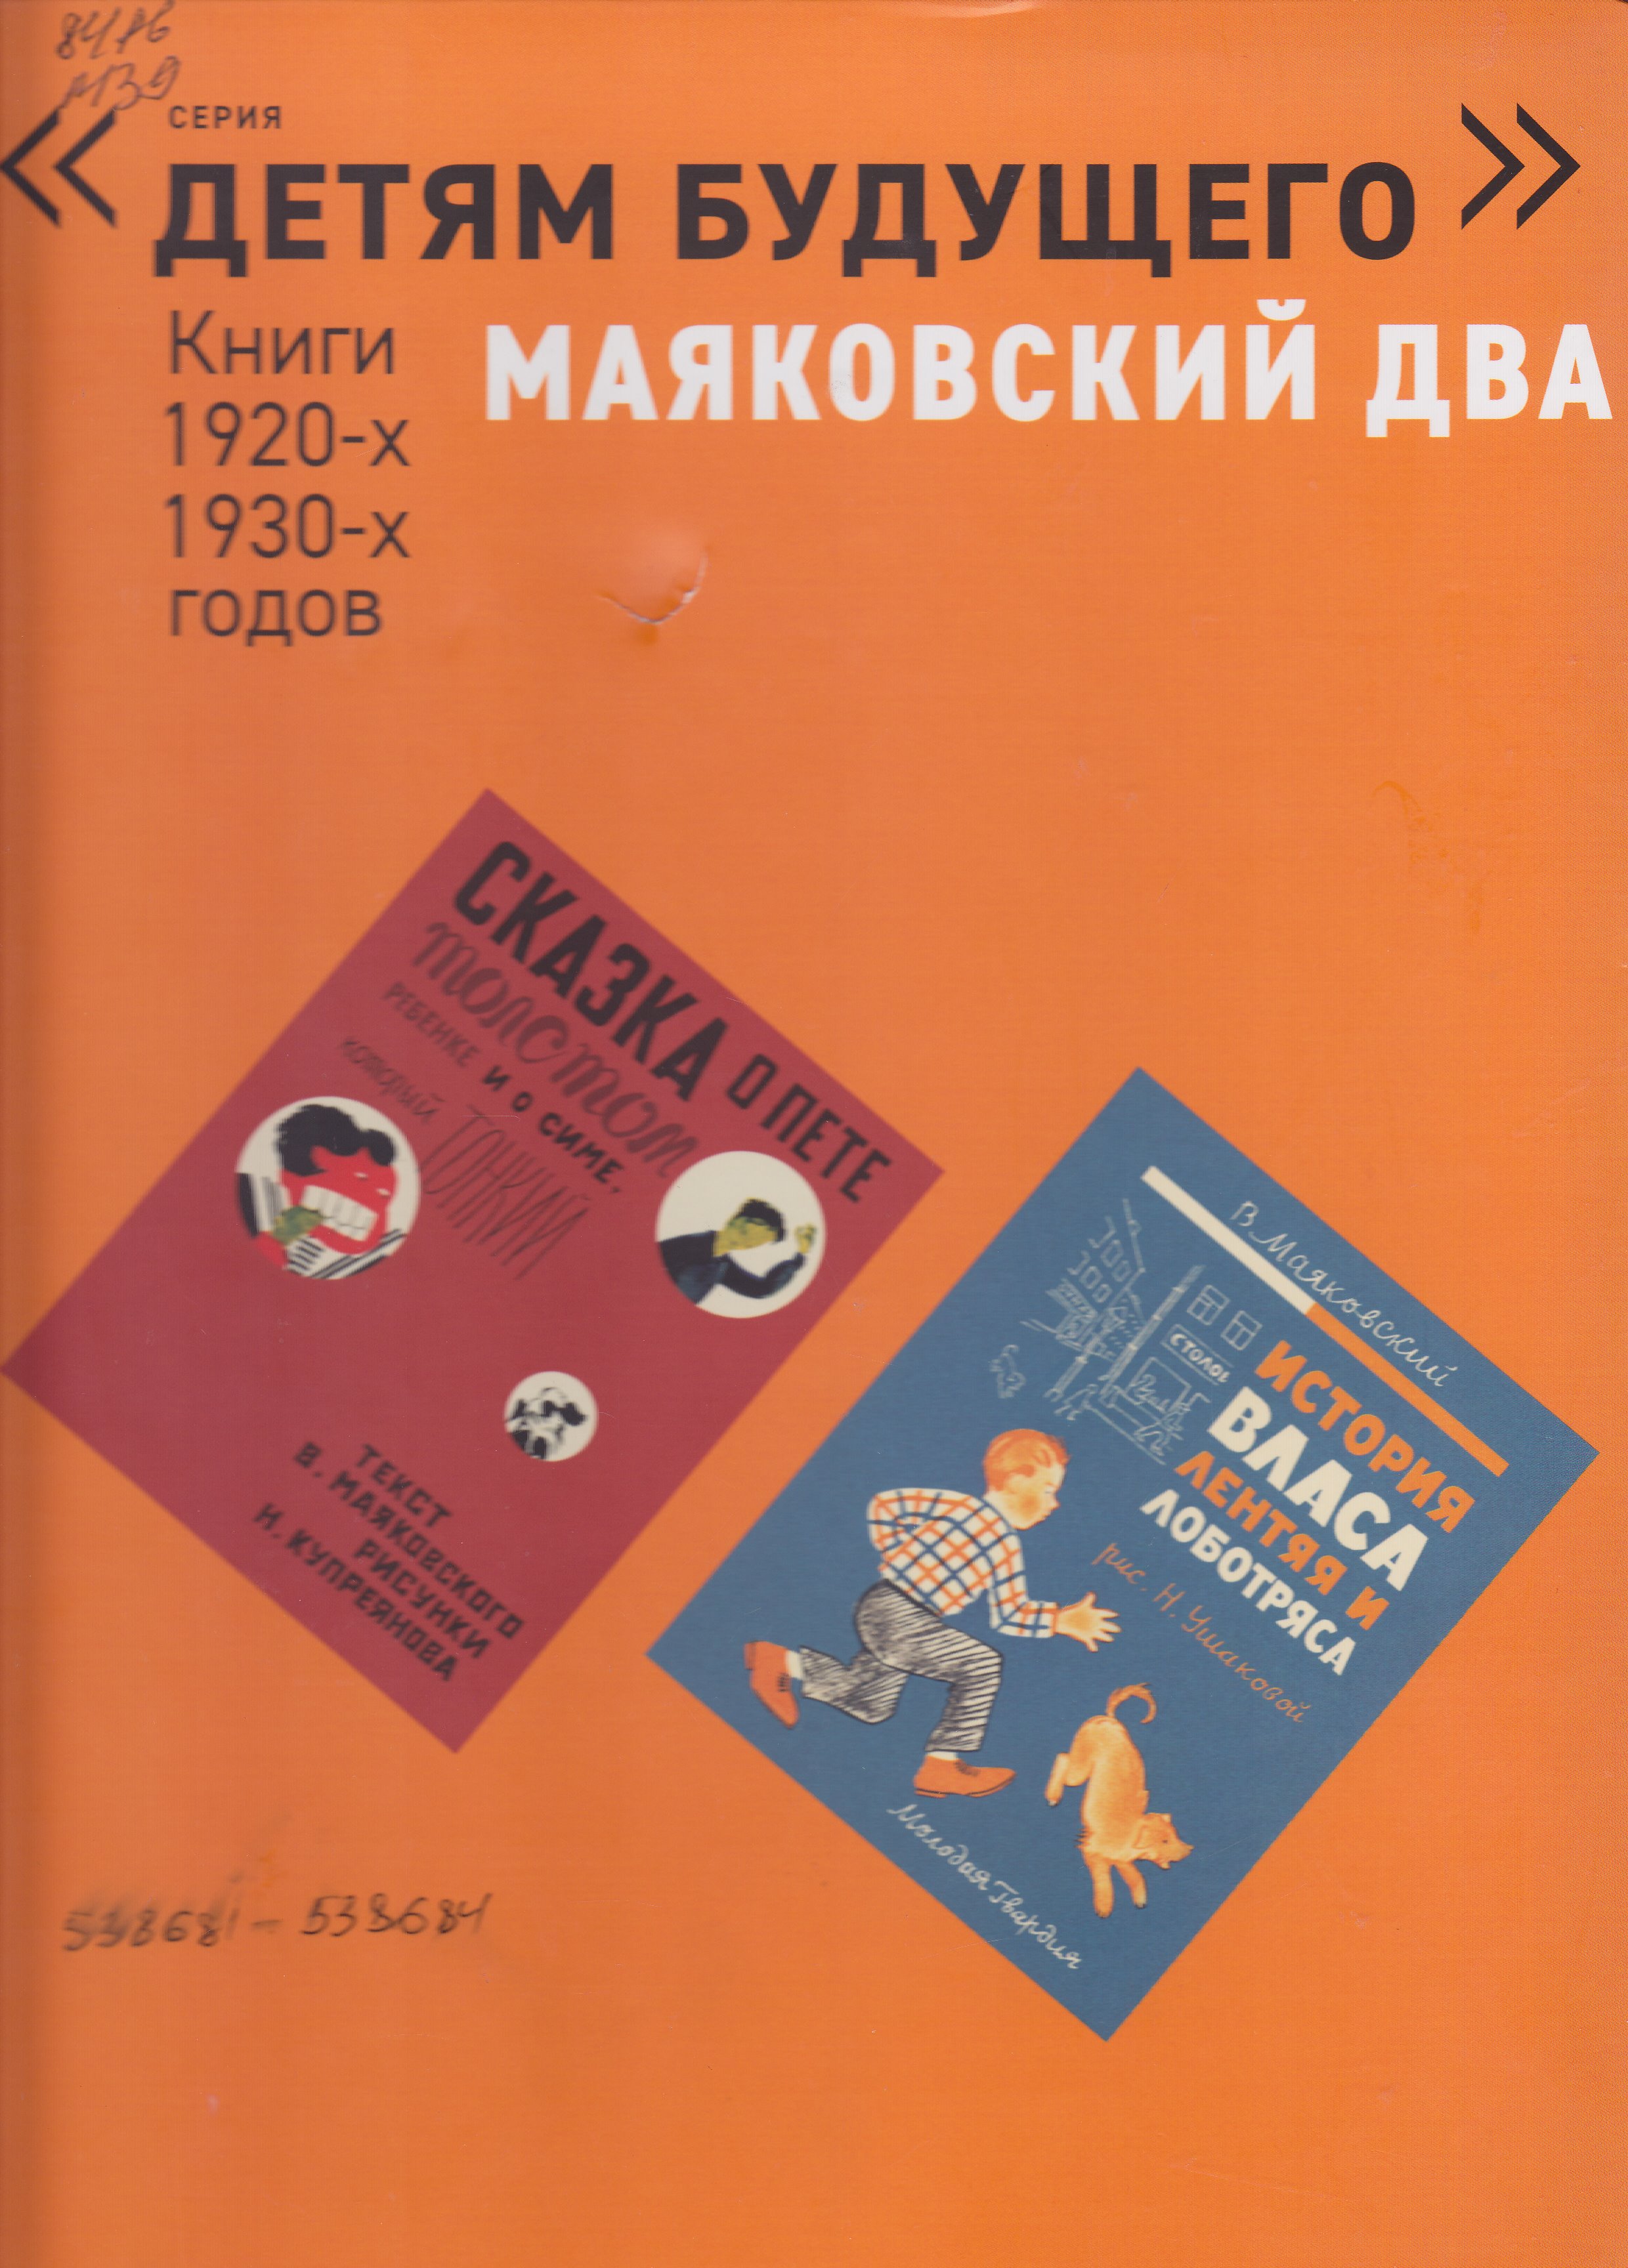 Нажмите для увеличения. Книги 1920-х – 1930-х годов. Серия Детям будущего от издательства Арт-Волхонка.